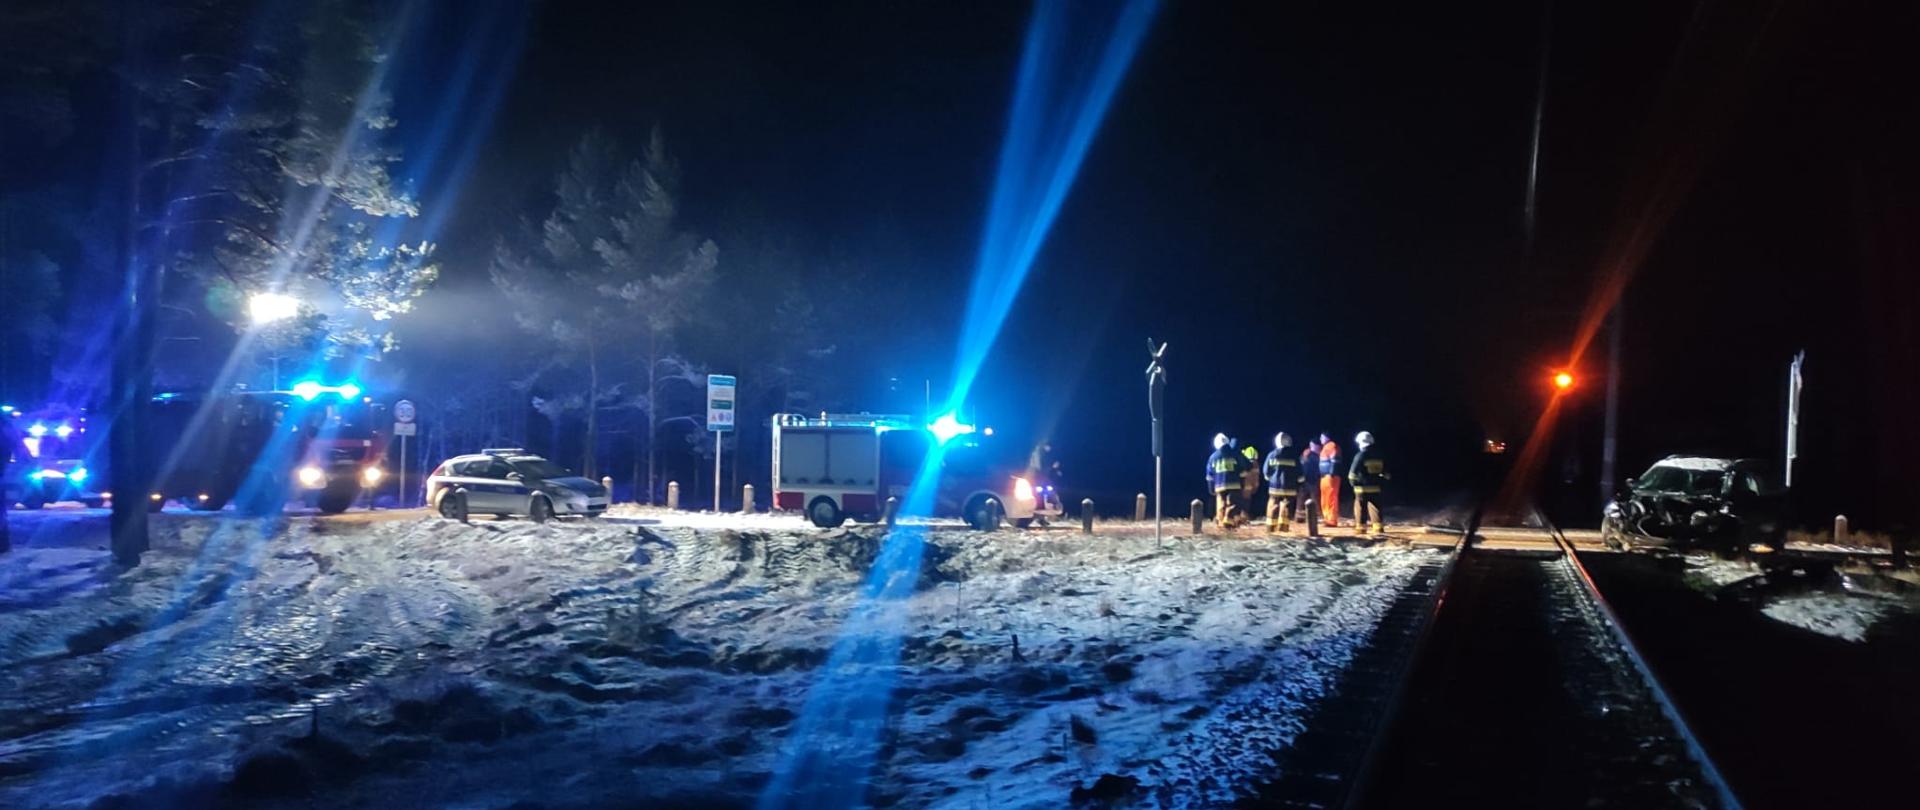 Na miejsce zdarzenia zadysponowano zastępy z JRG Złotów oraz Ochotniczych Straży Pożarnych z terenu powiatu złotowskiego jak również ze względu na lokalizacje JRG i OSP z terenu powiatu pilskiego